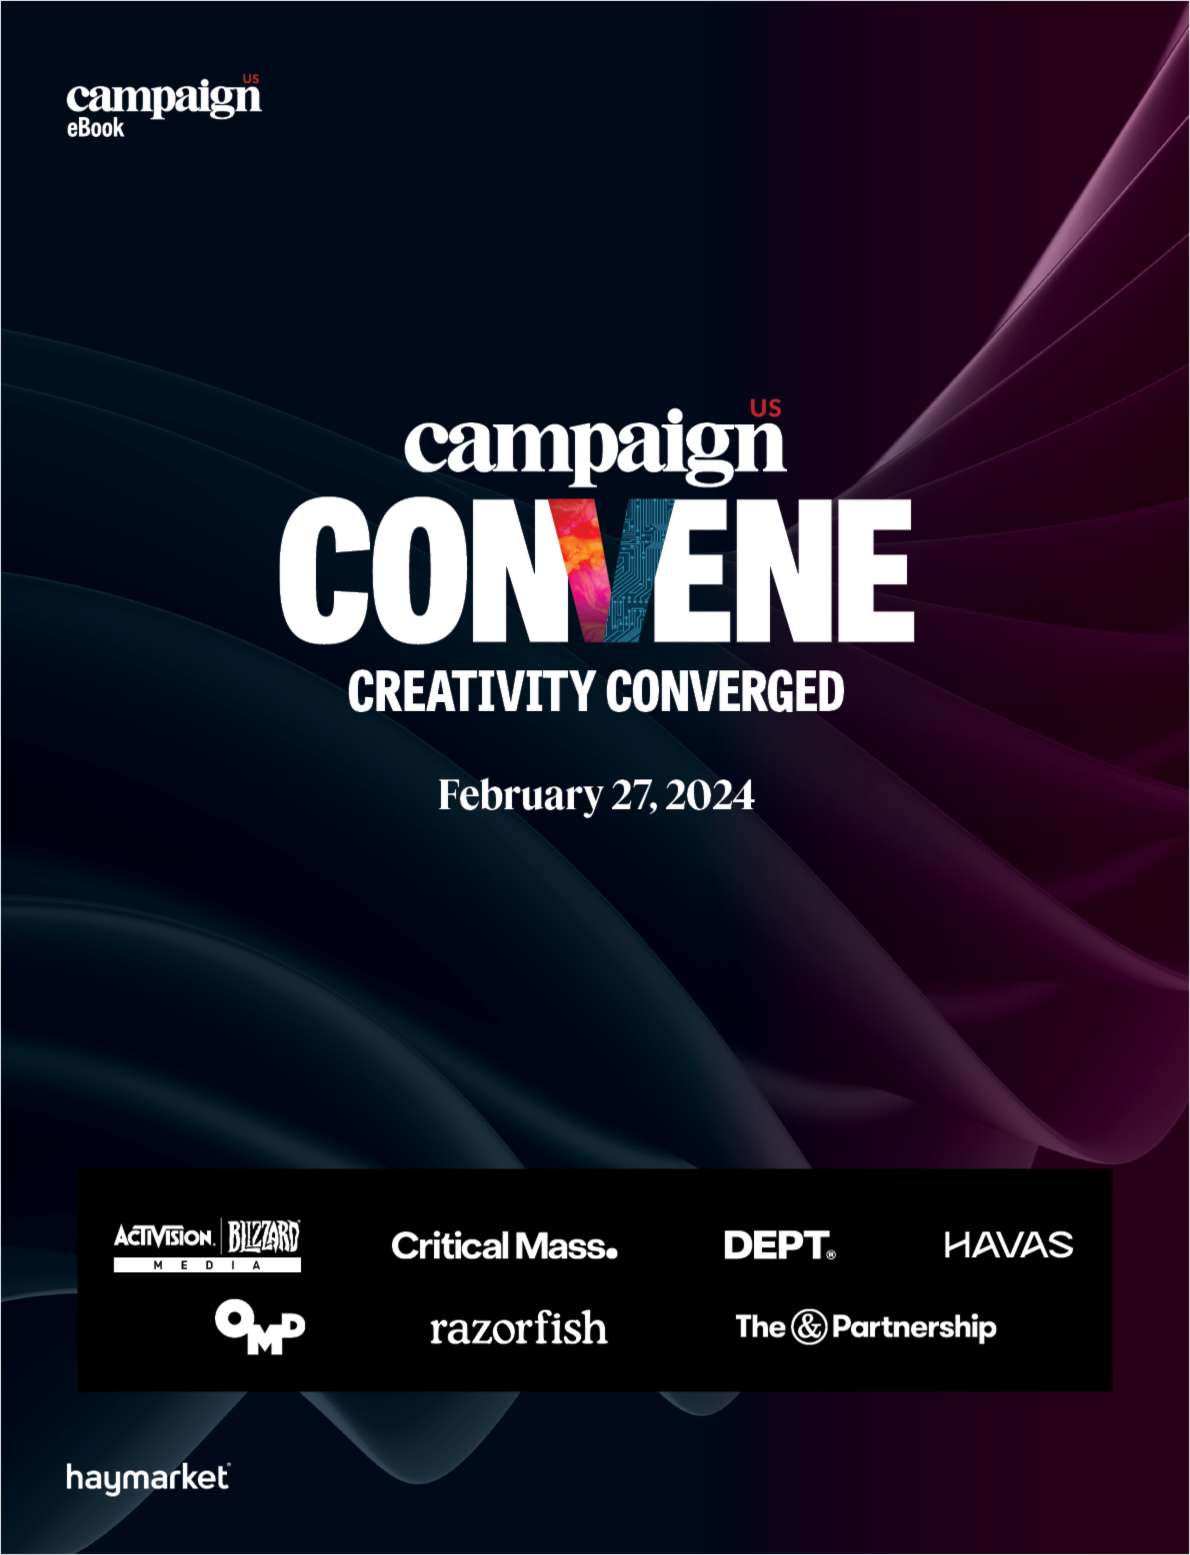 Campaign Convene: Creativity Converged eBook